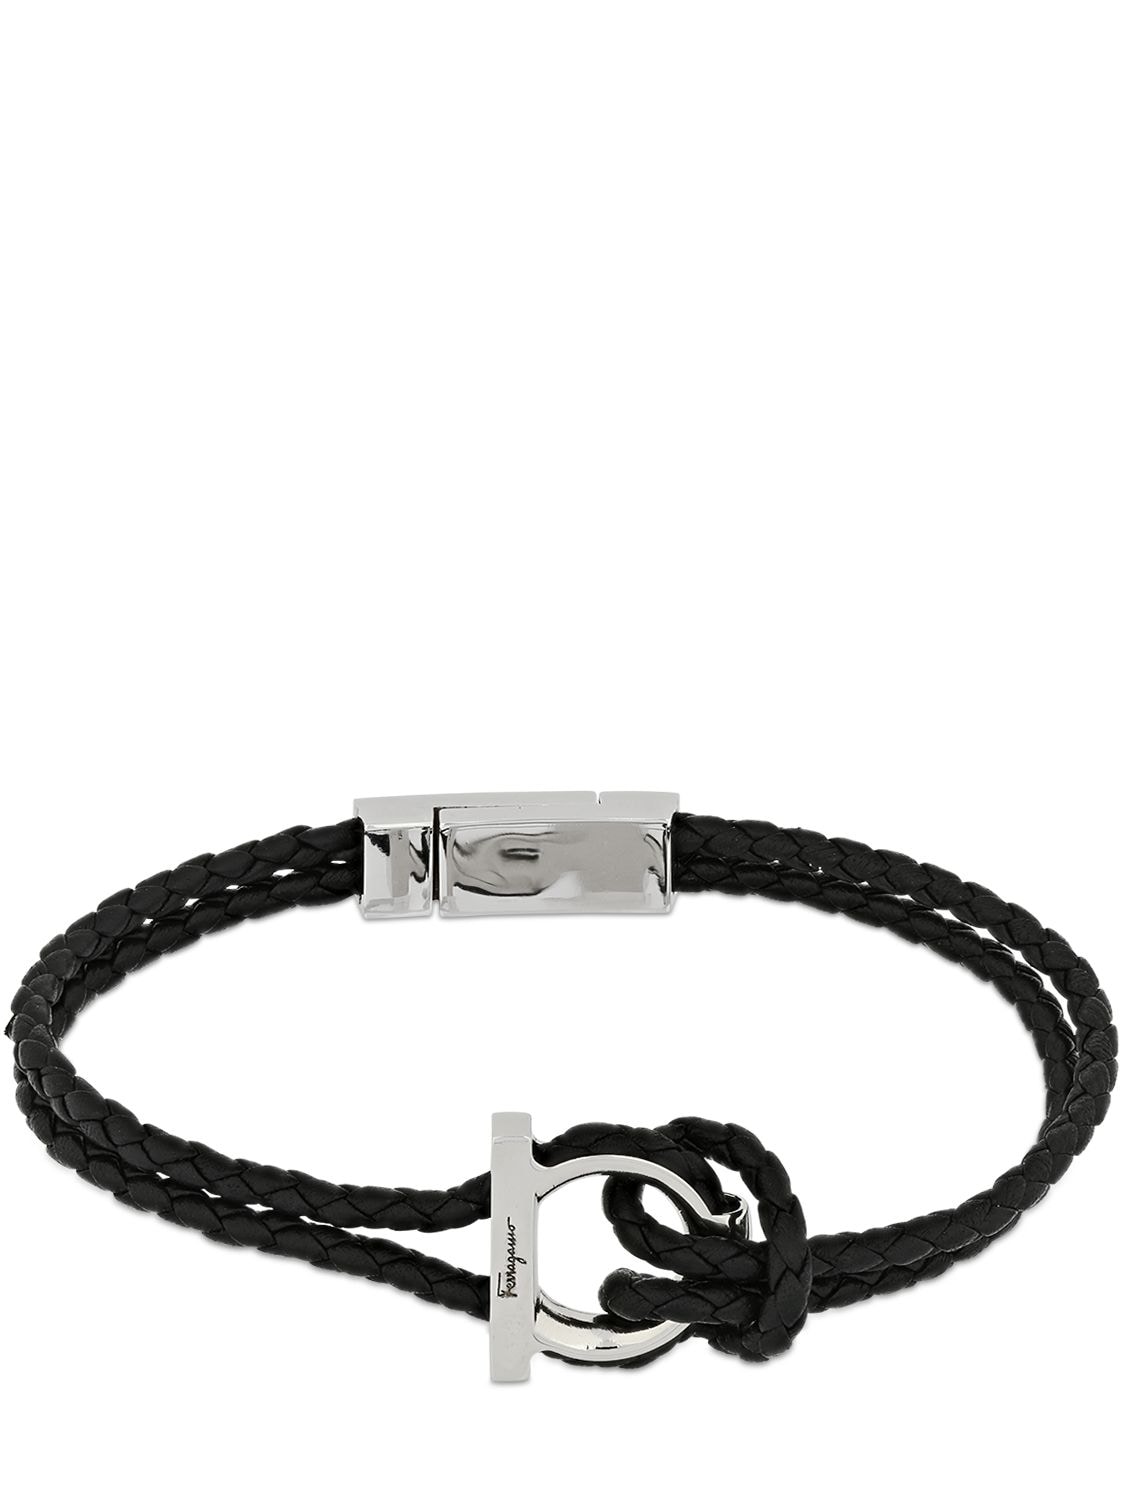 Ferragamo 19cm Gancio Braided Leather Bracelet In Black